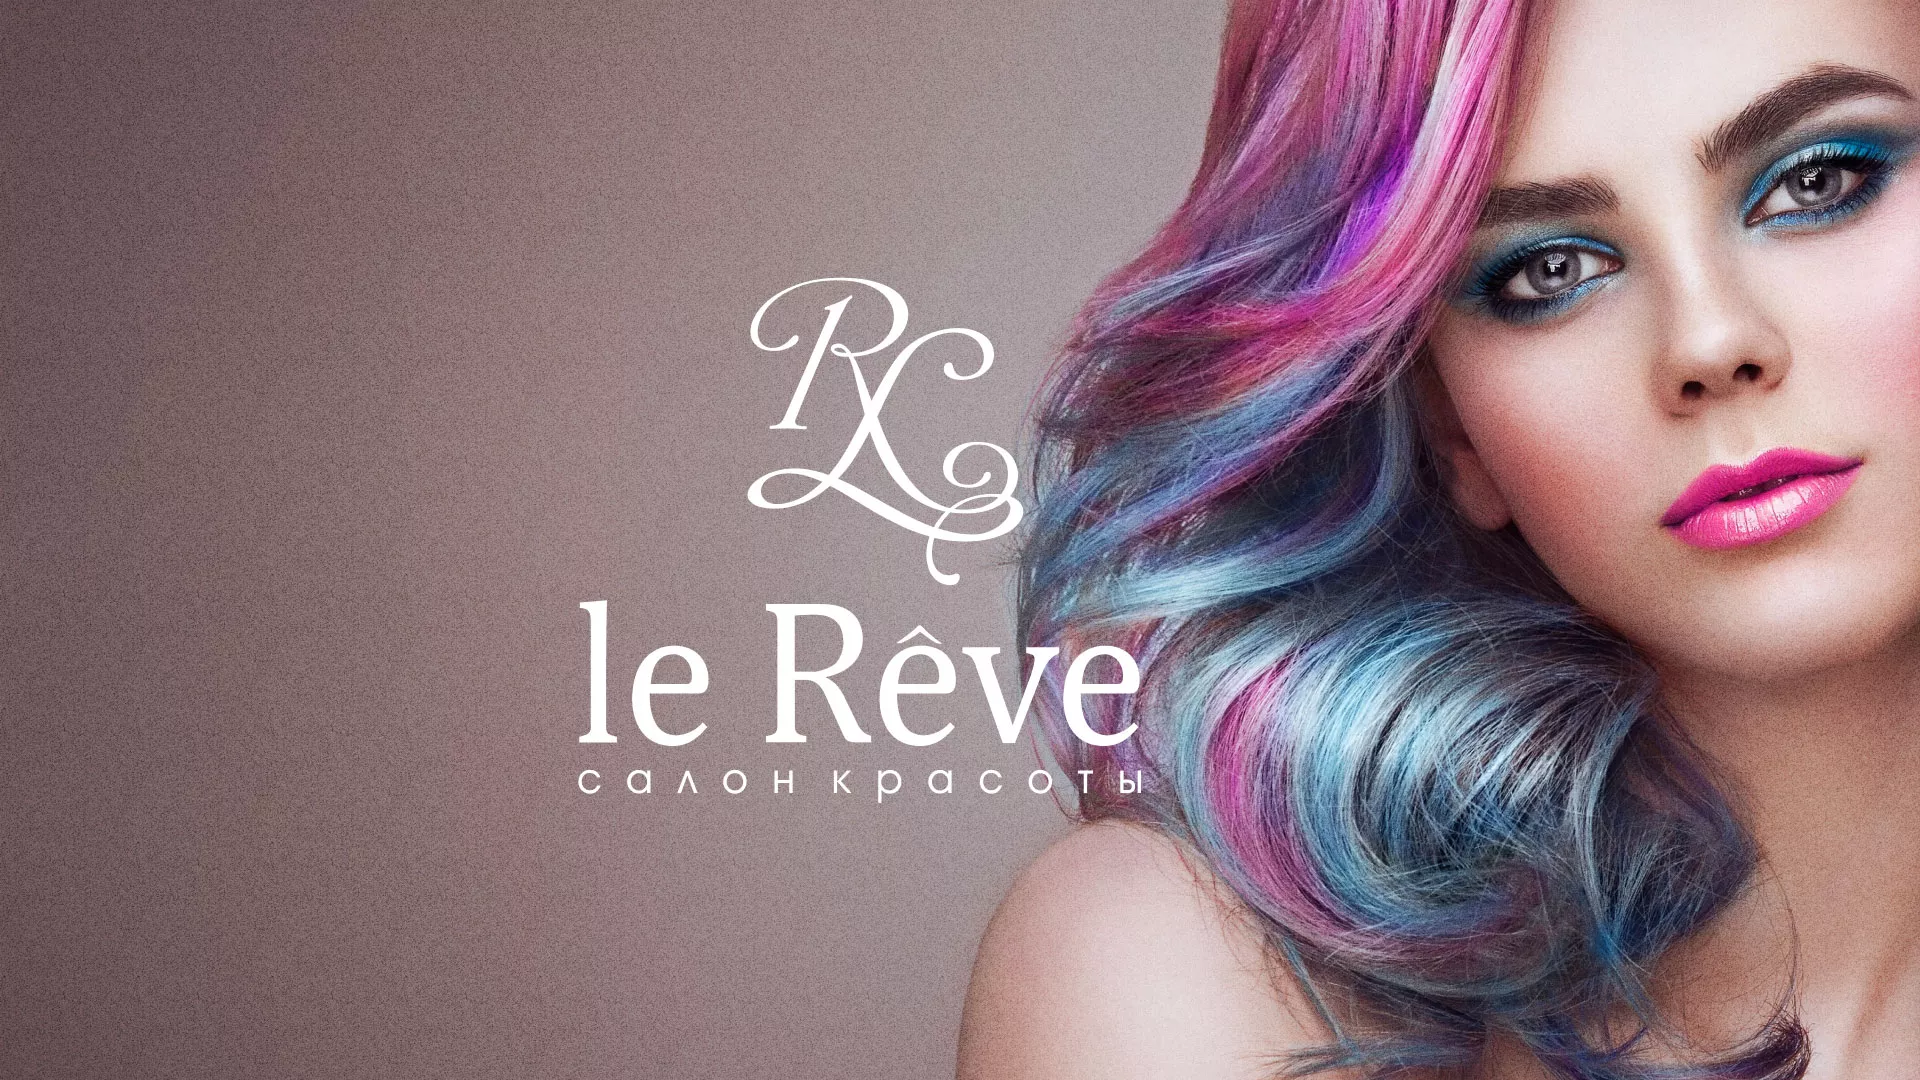 Создание сайта для салона красоты «Le Reve» в Новоалександровске